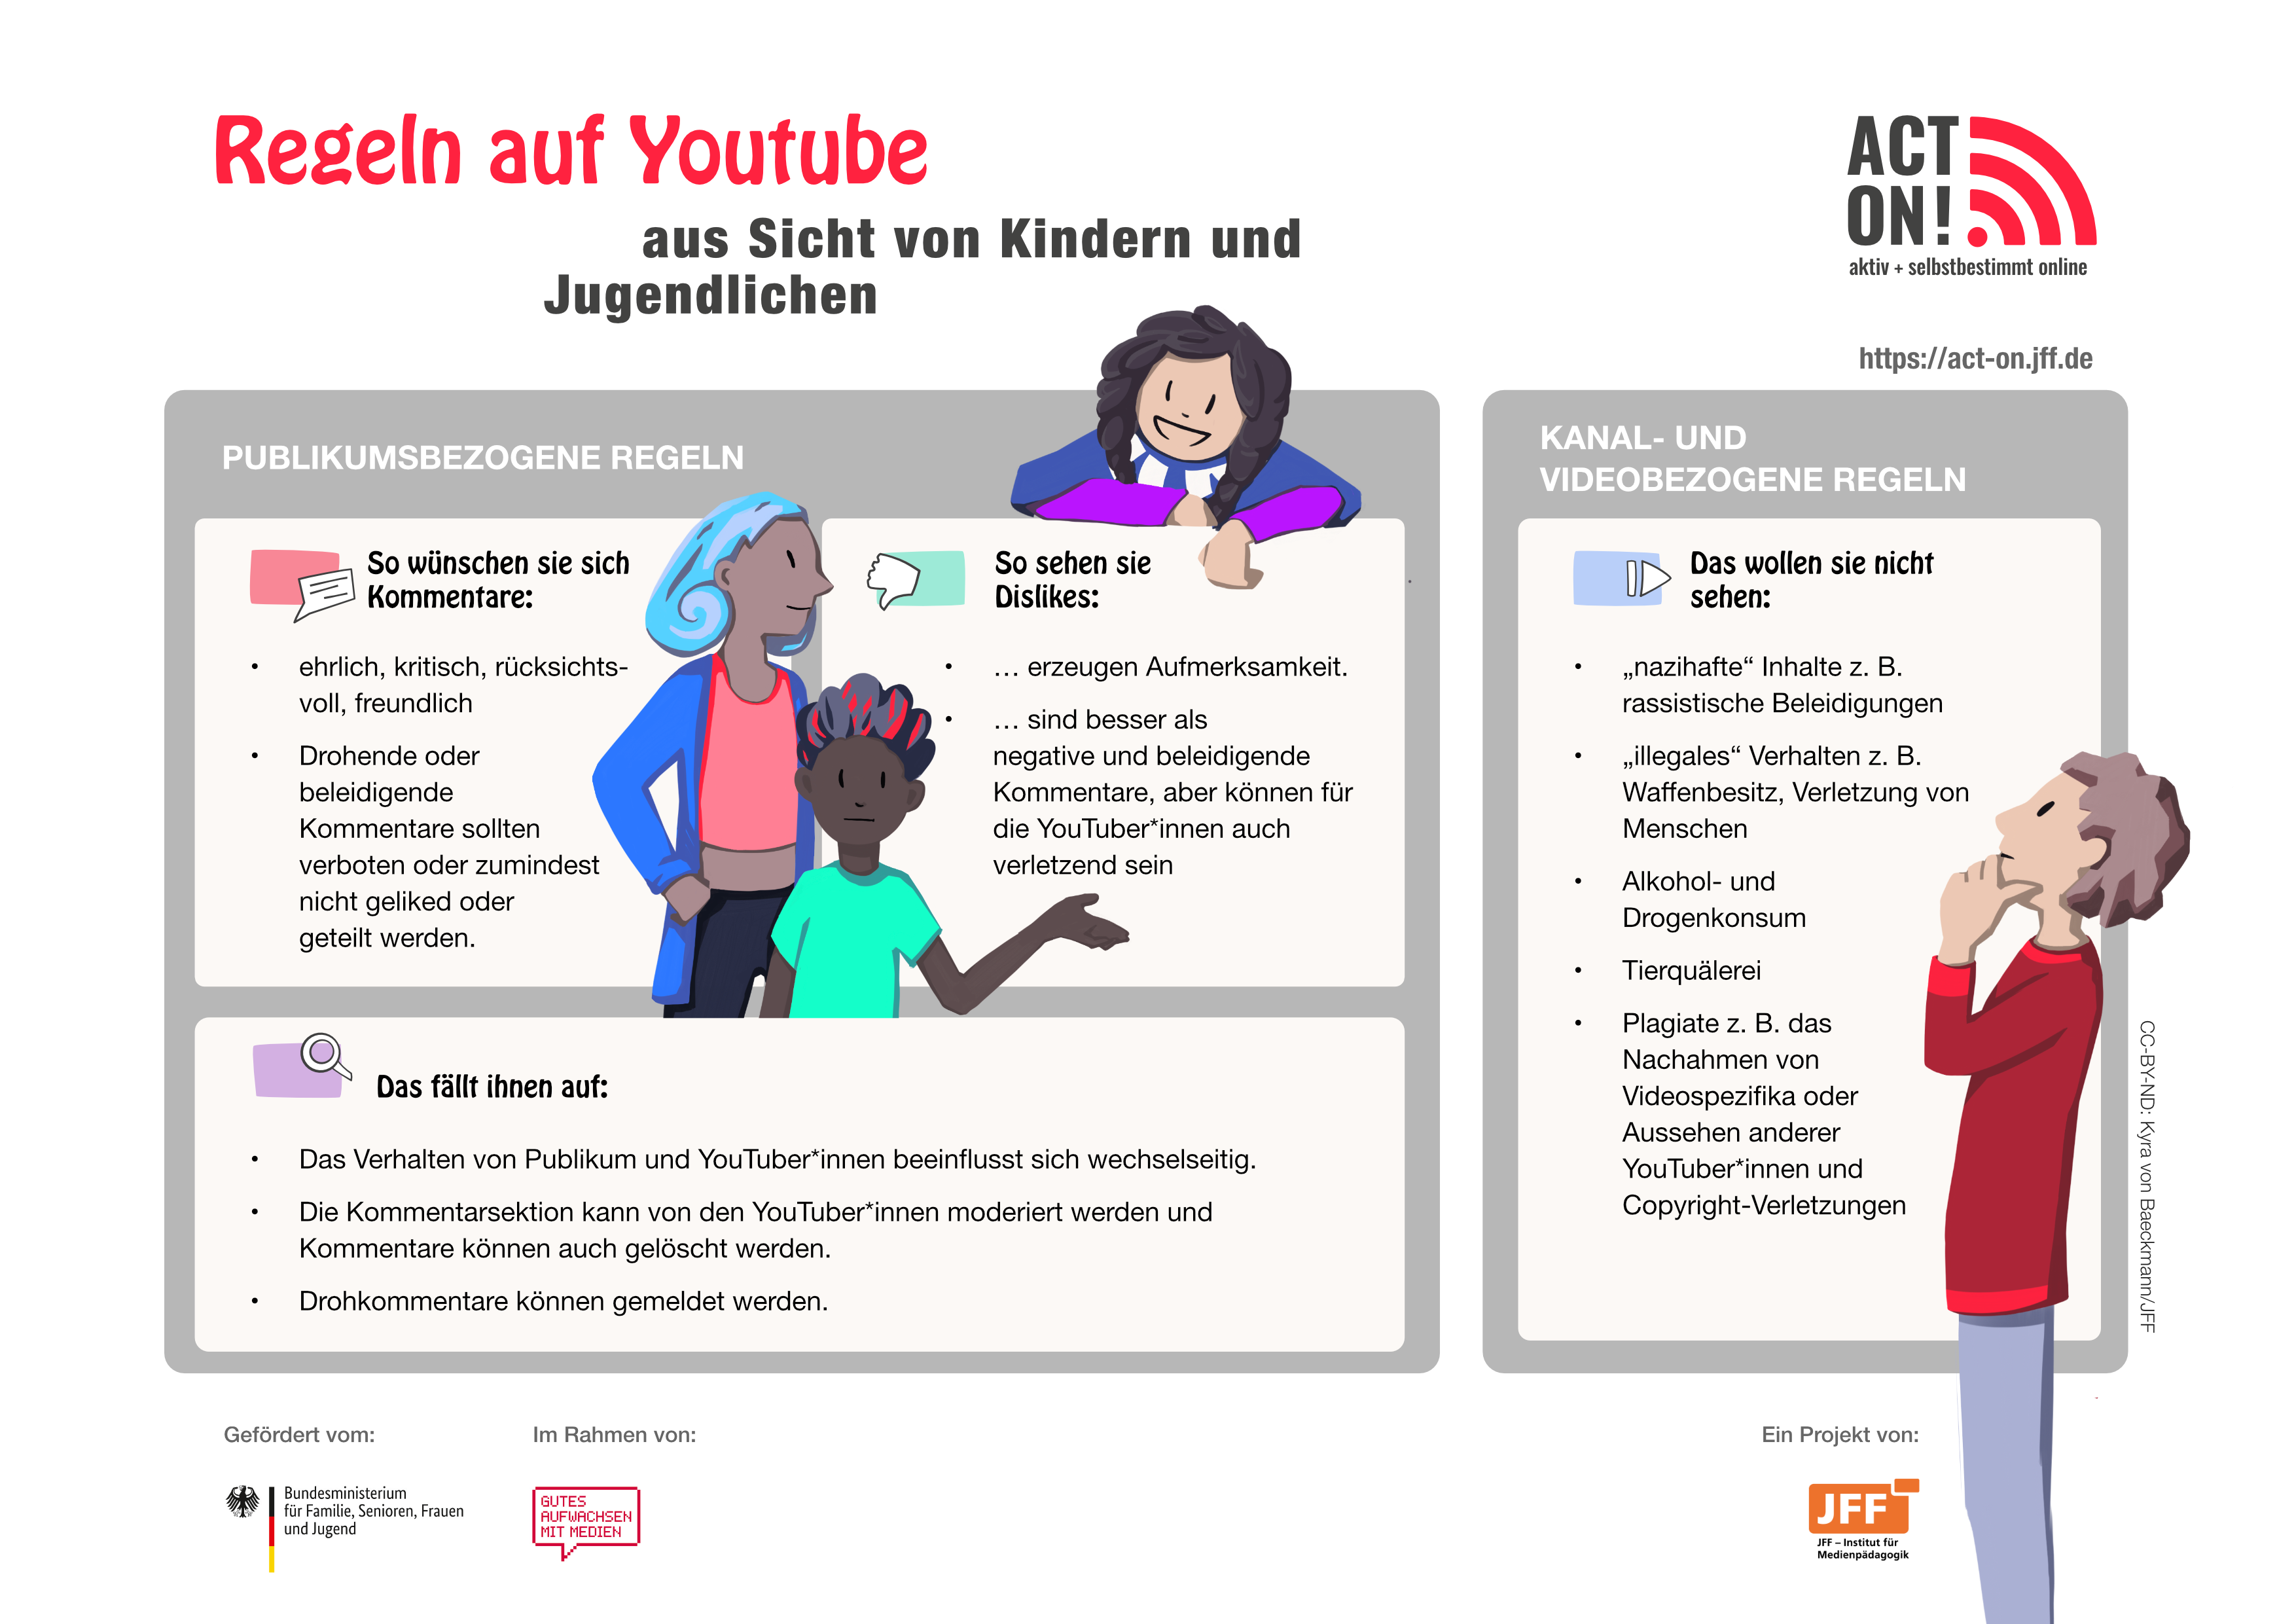 Regeln auf YouTube aus Sicht von Kindern und Jugendlichen